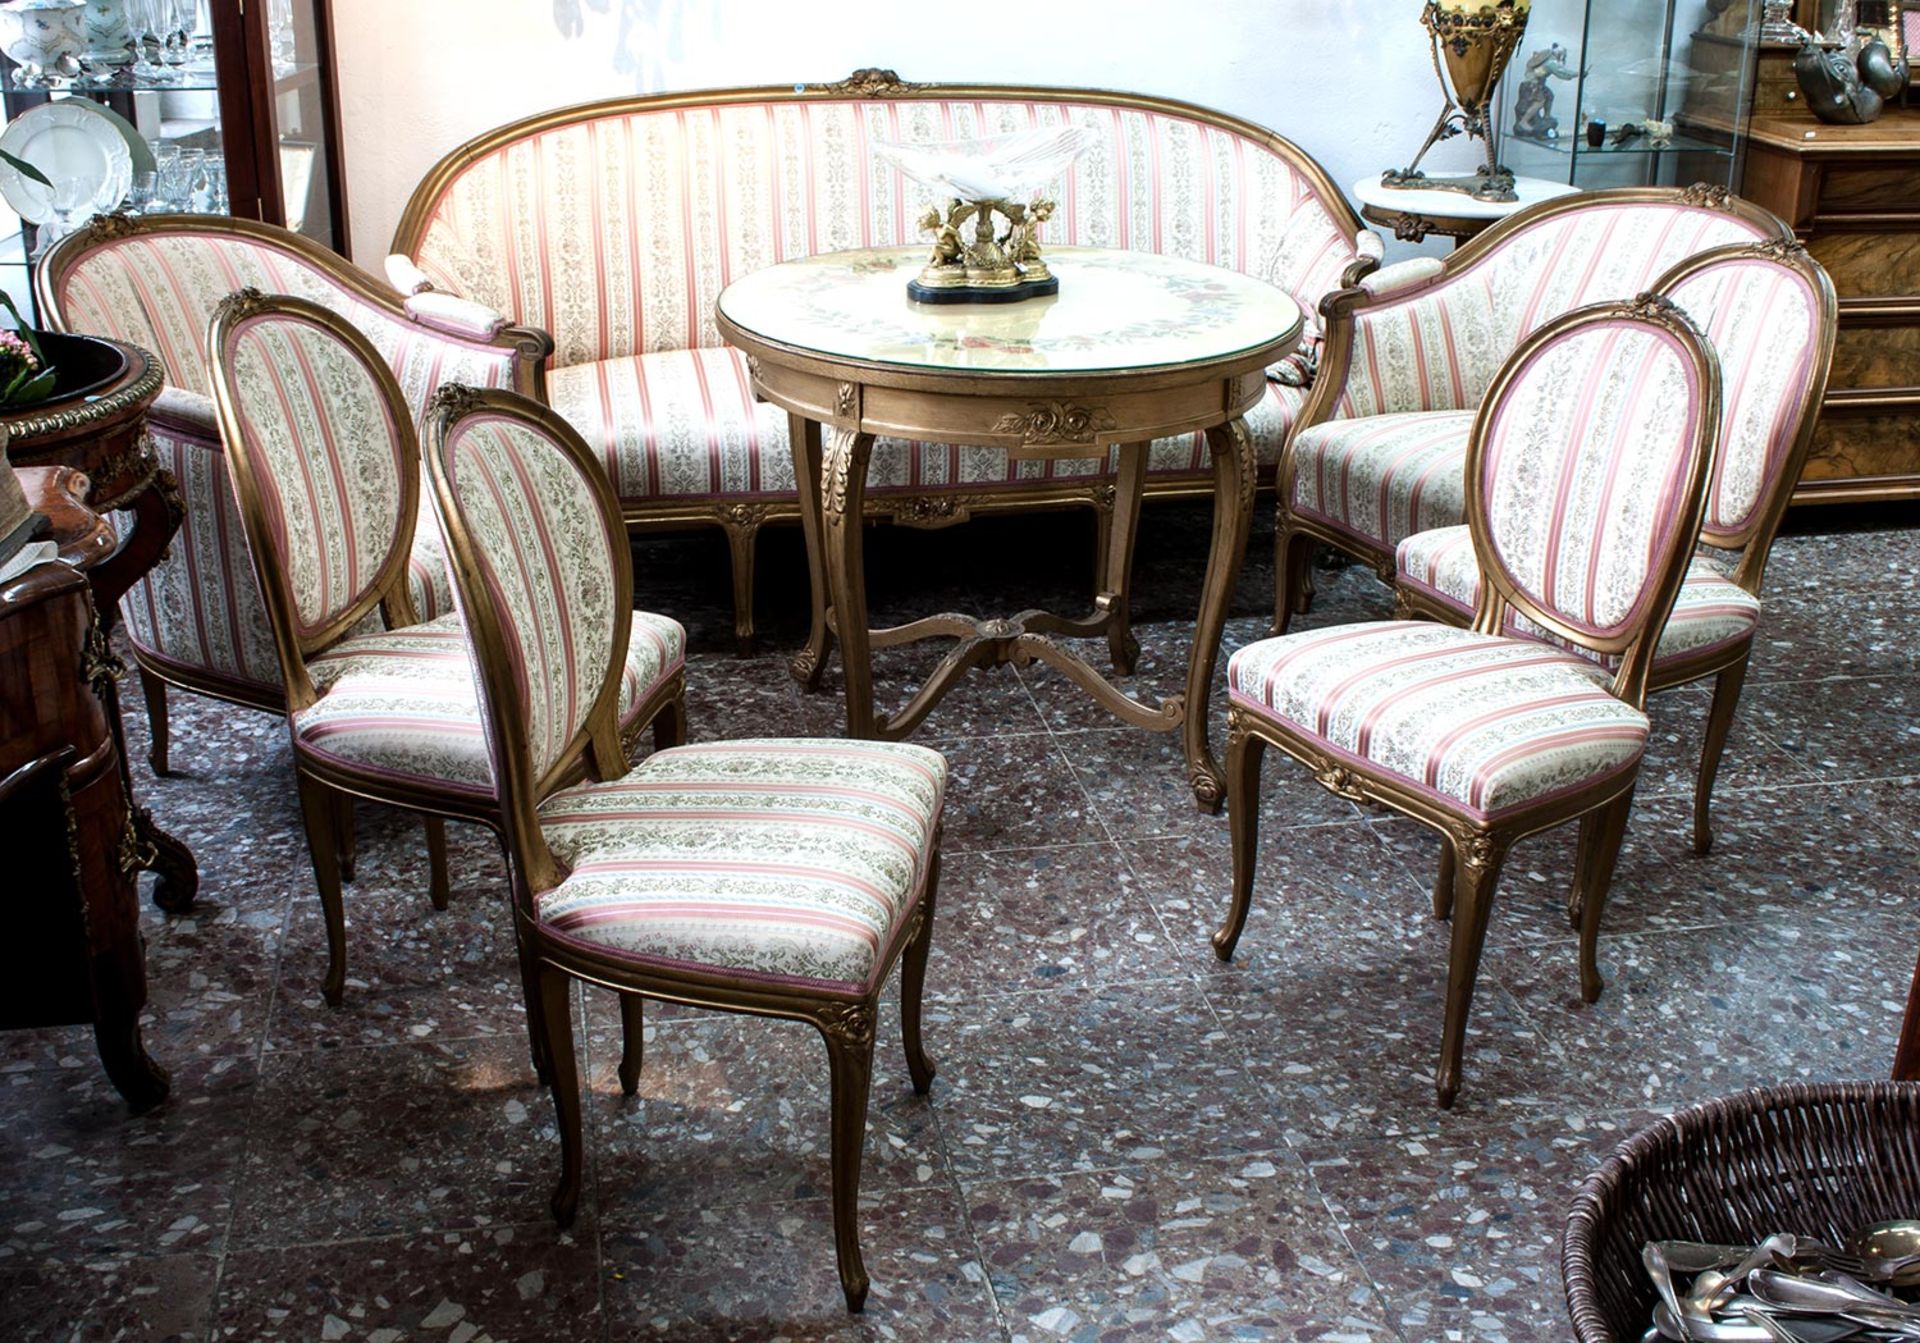 Salon-SitzgruppeLouis-Phillipp,19. Jh., 3-Sitzer, 2 Sessel, 4 Stühle und runder Tisch, goldfarben